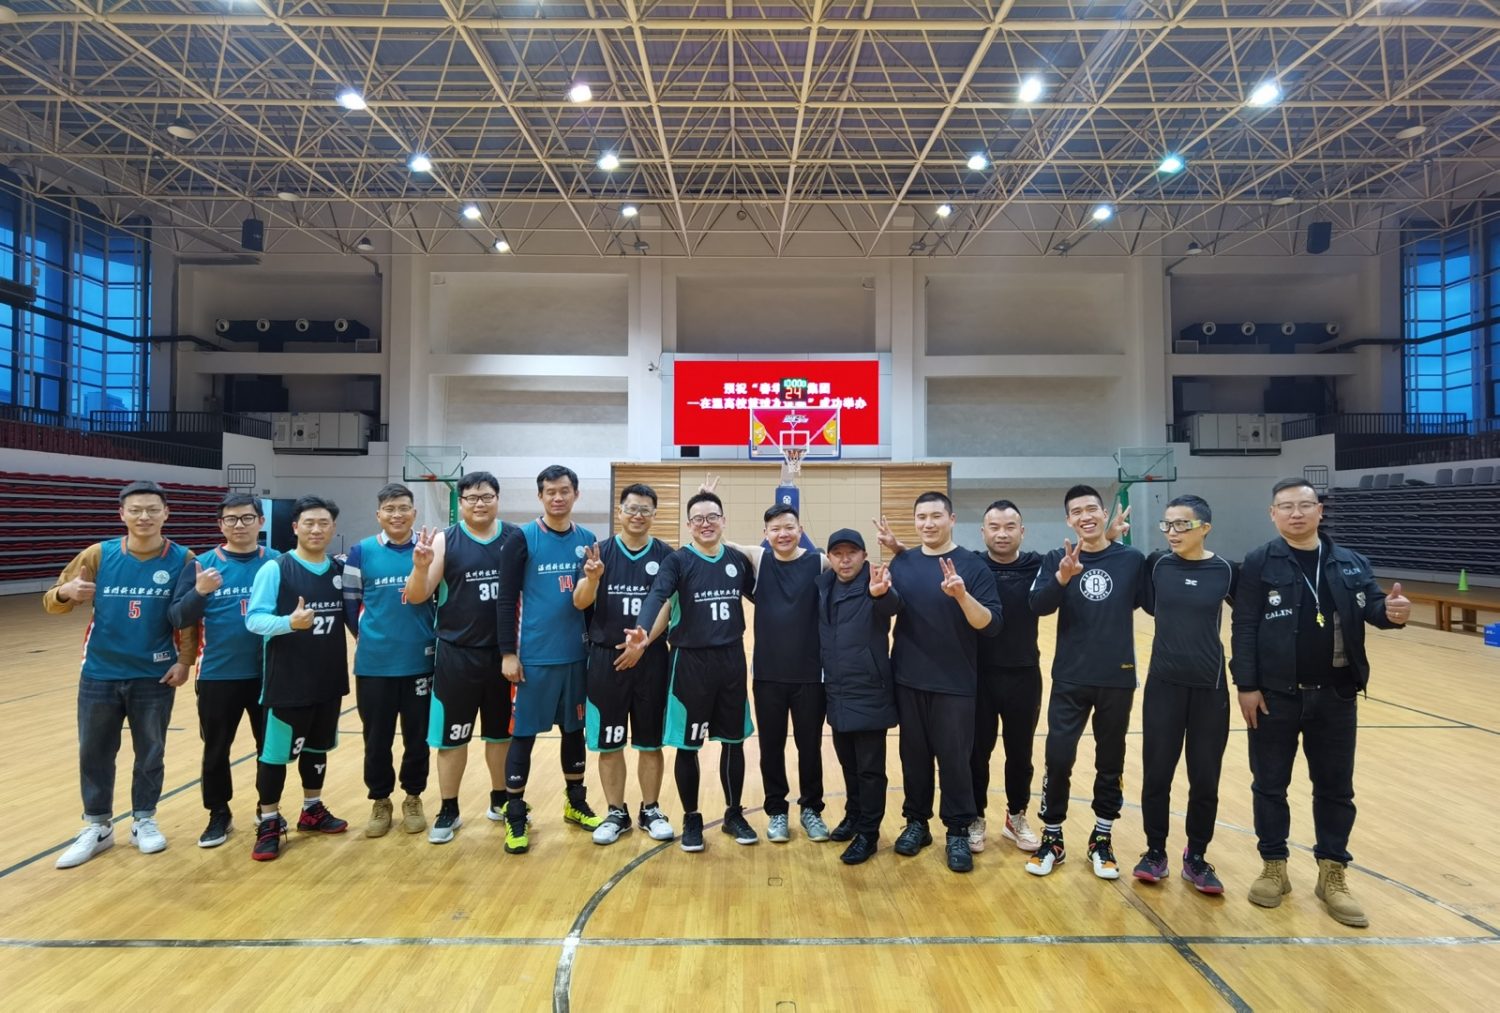 春华教育集团温州区域&温州科技职业学院教职工篮球友谊赛成功举办